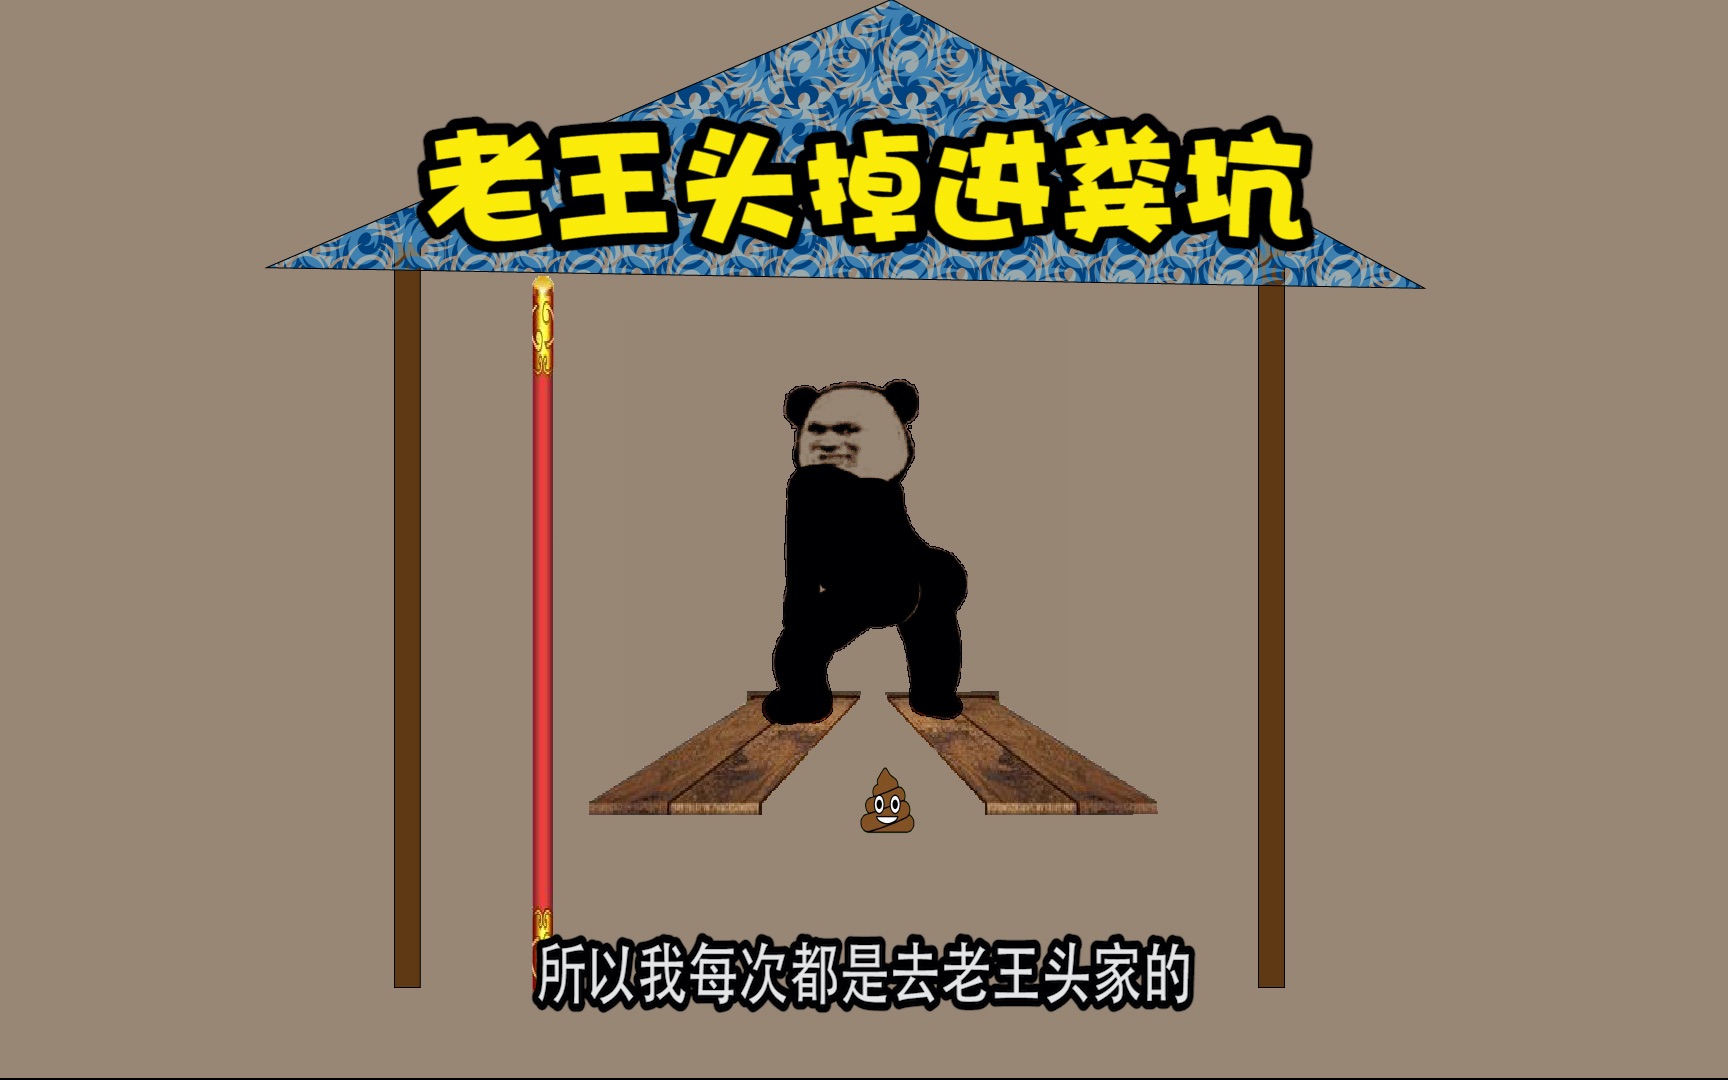 熊猫头沙雕图片 壁纸图片